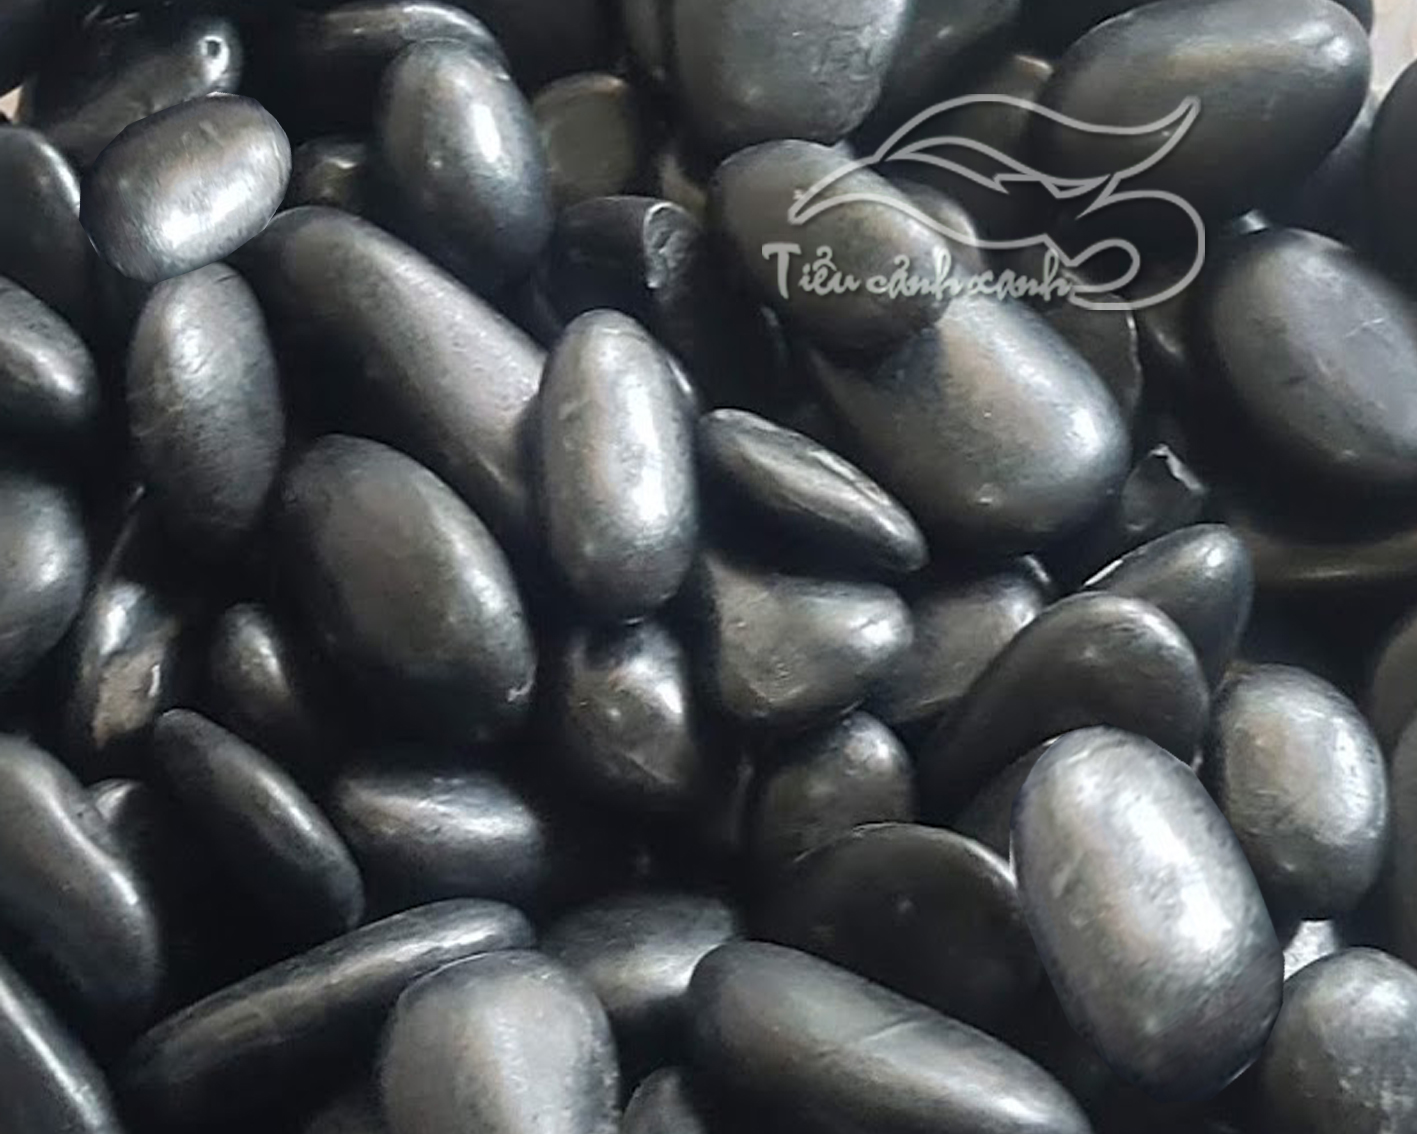 Hãy khám phá hình ảnh với đá cuội đen bóng tự nhiên - một vật thể với sắc đen đầy bí ẩn và quyến rũ. Với sự tự nhiên và độc đáo, đá cuội đen bóng mang đến cho bạn một niềm vui khám phá và tò mò vô tận.